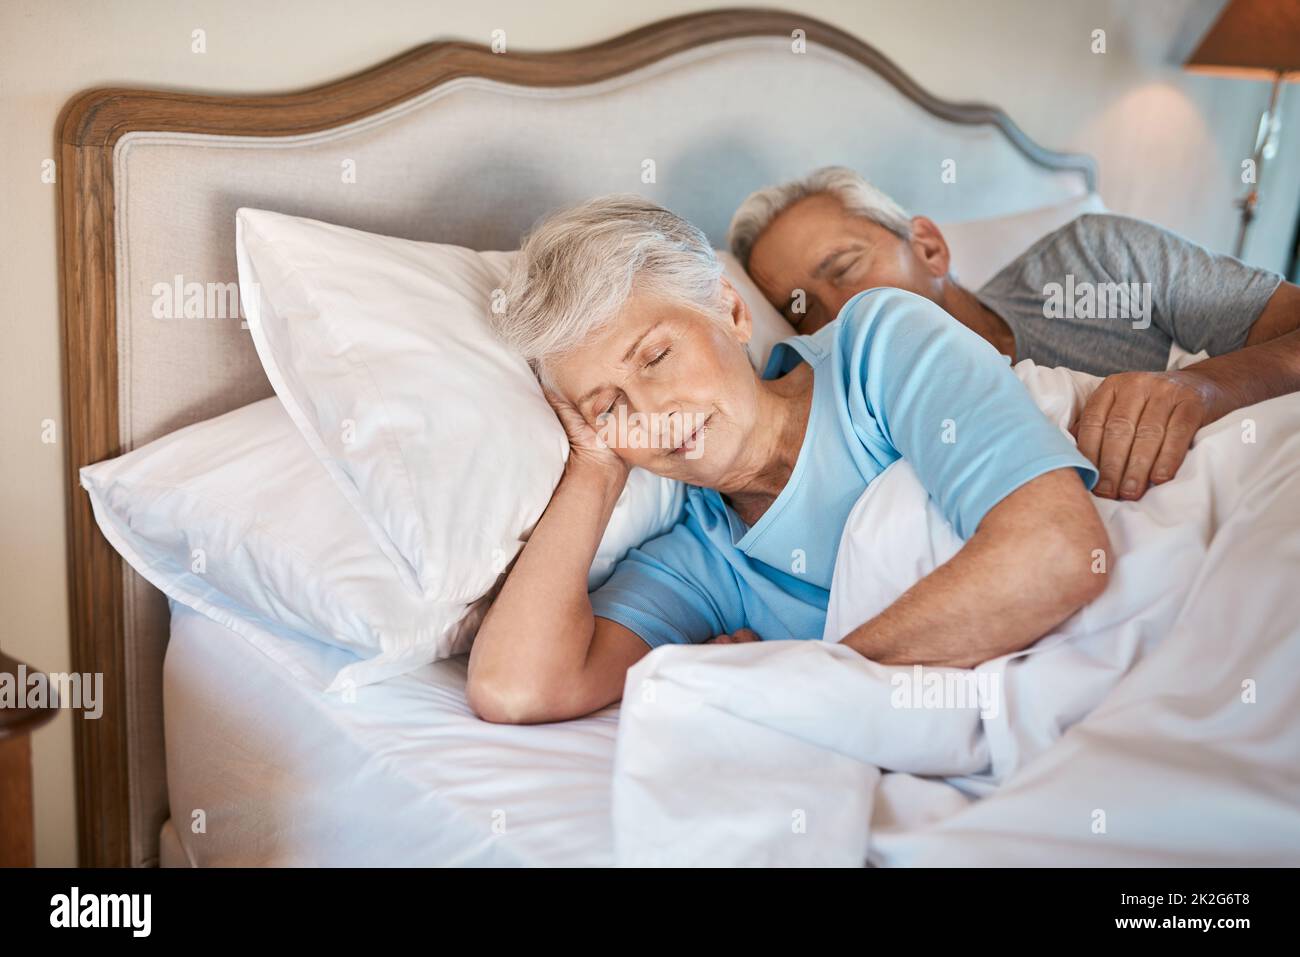 Les vieilles habitudes ne meurent jamais. Photo courte d'un couple affectueux et âgé se câliner tout en dormant au lit dans une maison de soins infirmiers. Banque D'Images